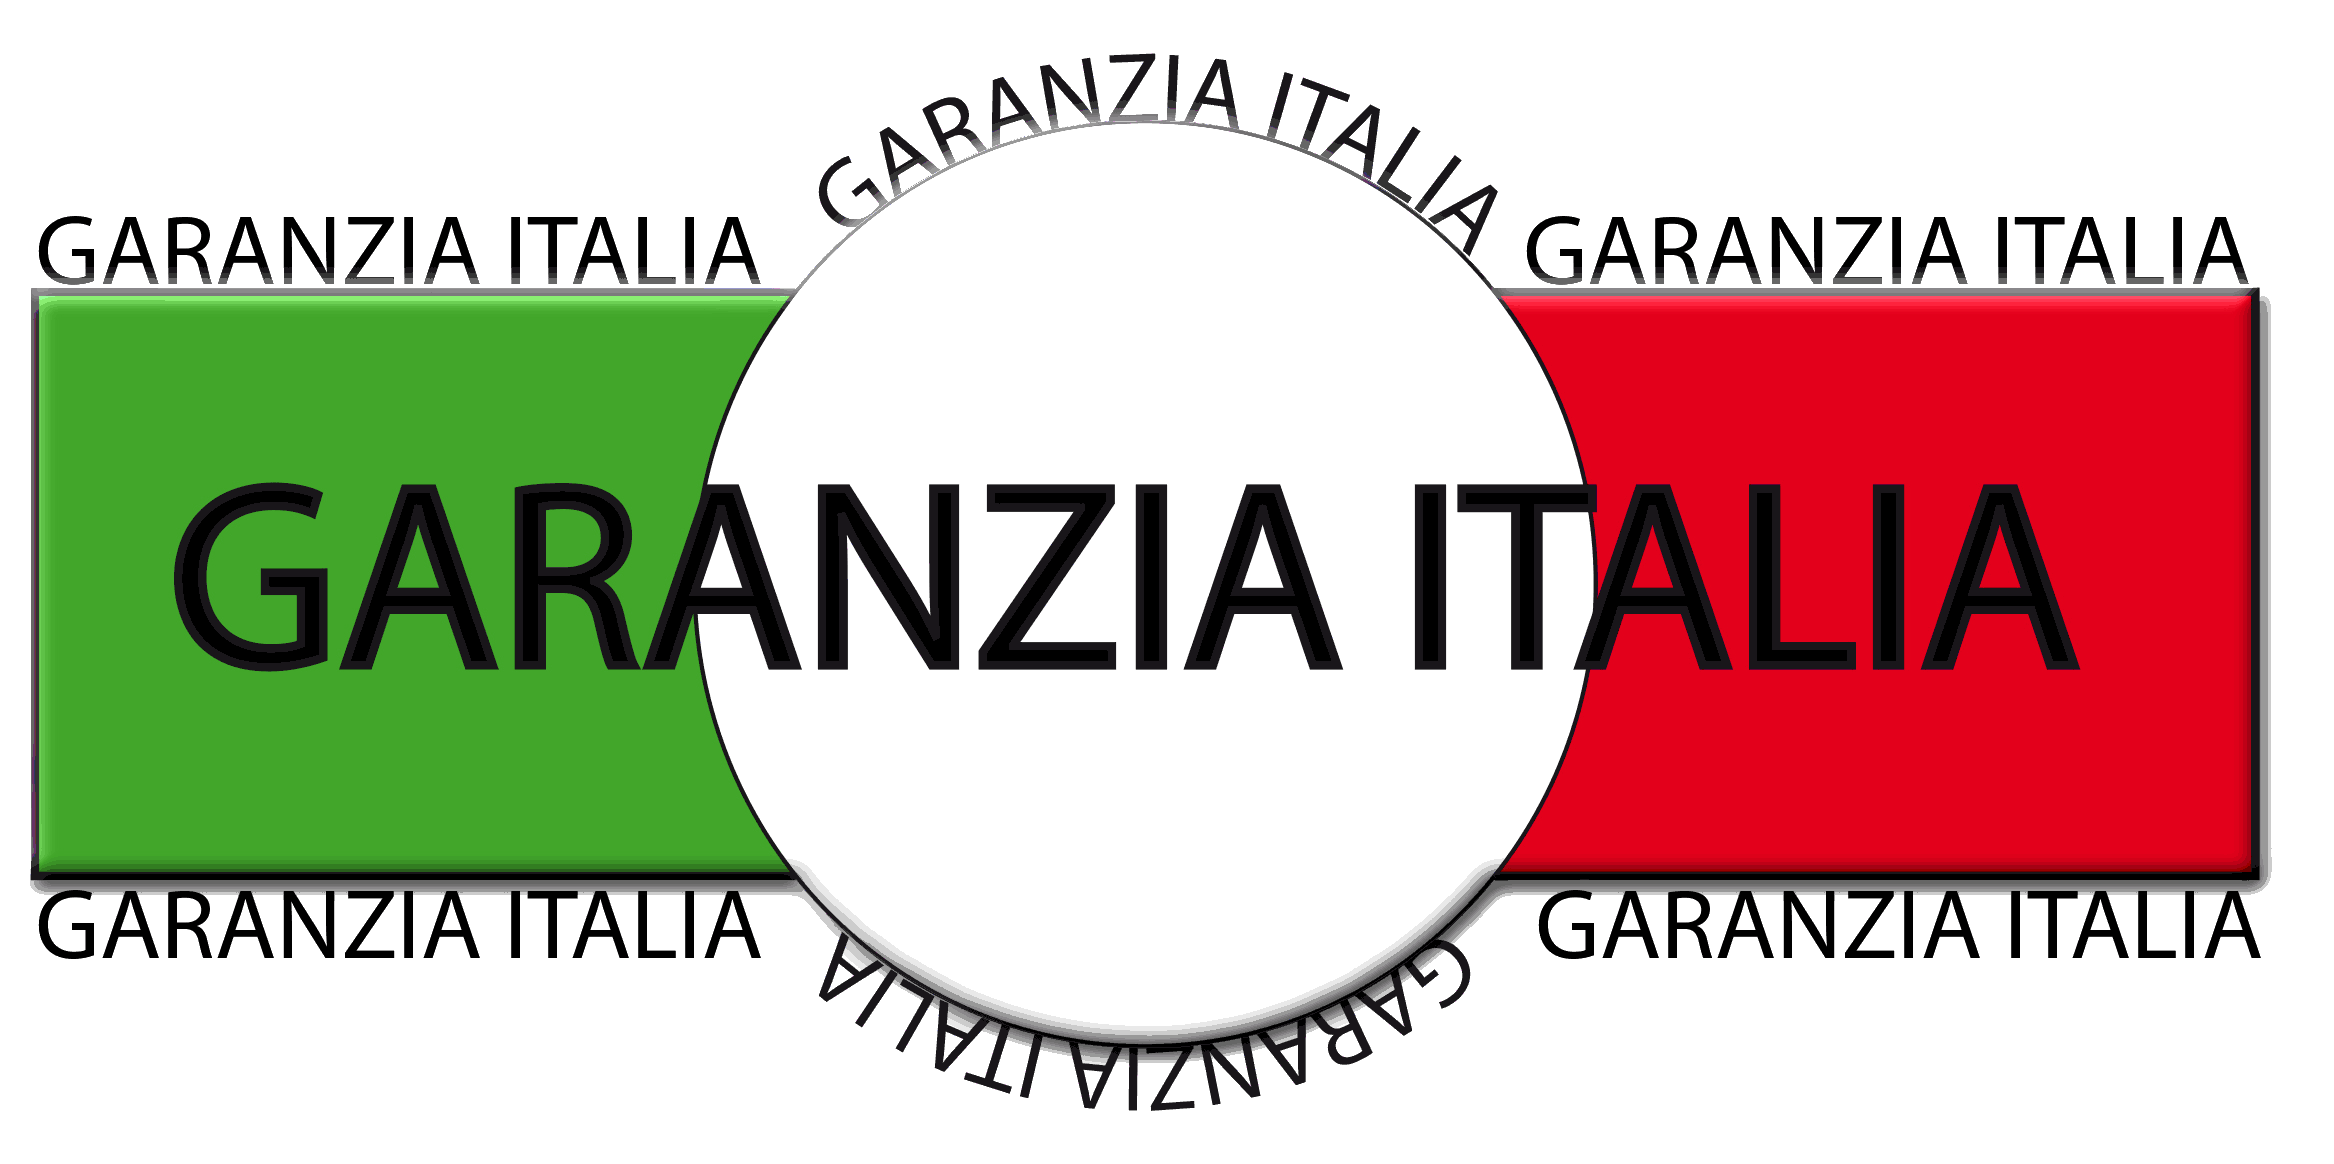 GARANZIA ITALIA